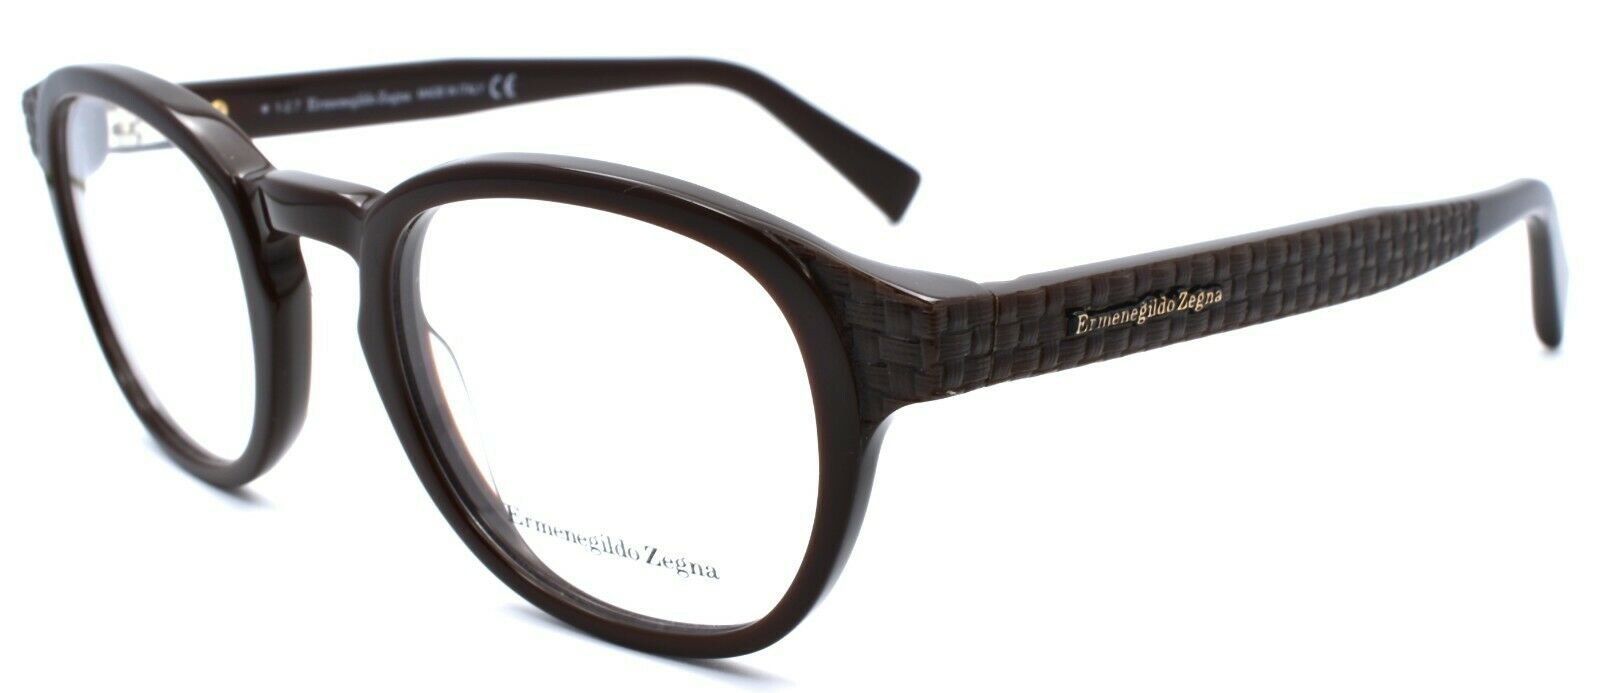 1-Ermenegildo Zegna EZ5108 050 Eyeglasses Frames 48-22-145 Dark Brown Italy-664689860074-IKSpecs